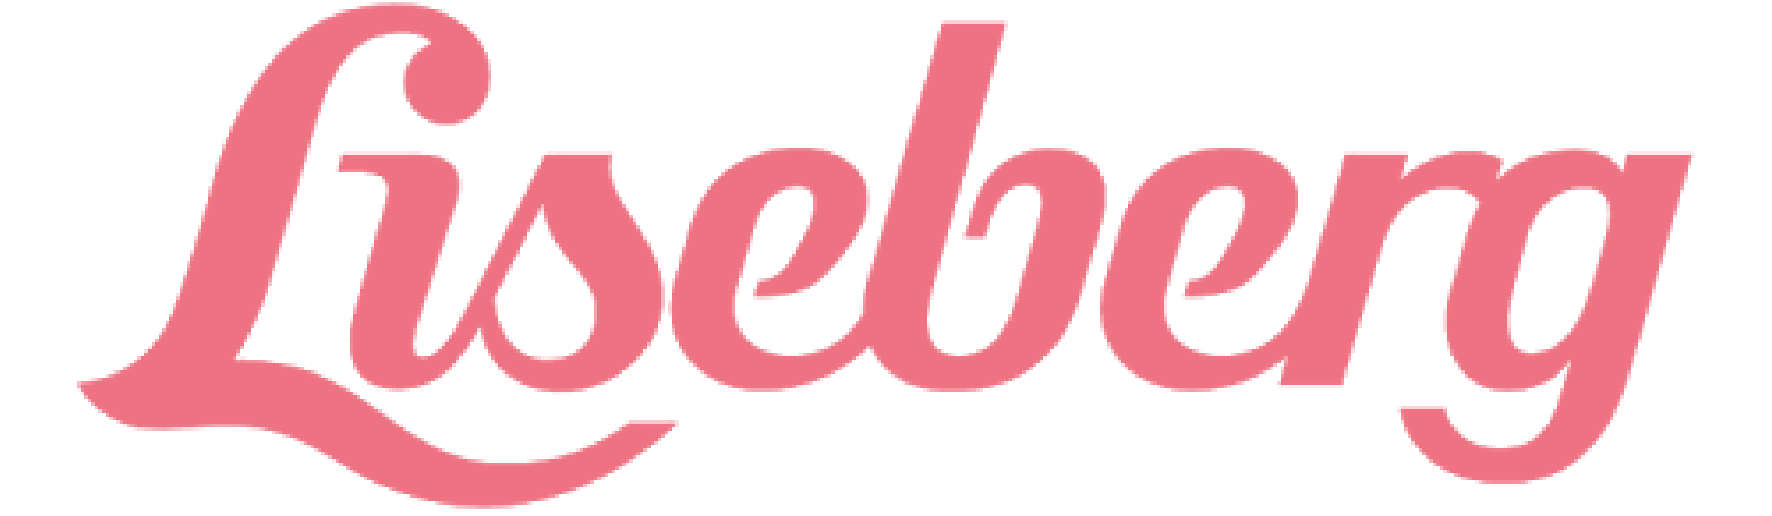 liseberg-logo-1